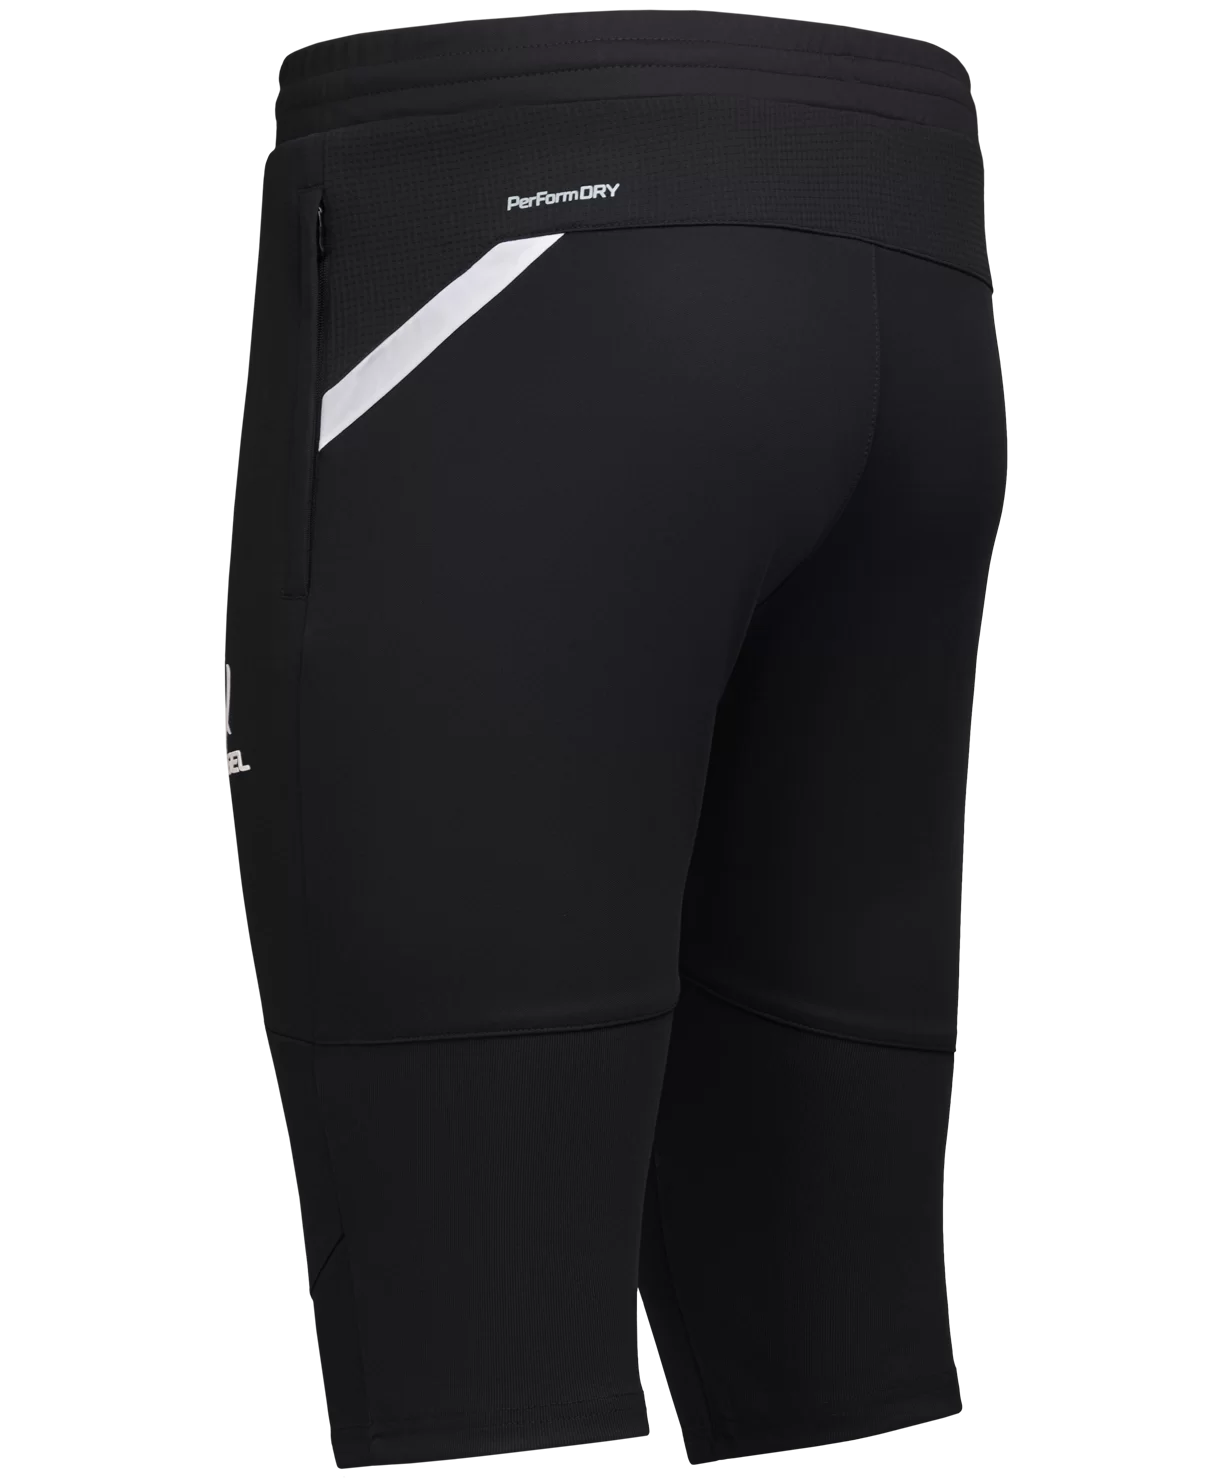 Реальное фото Брюки тренировочные DIVISION PerFormDRY Pro Training Pants 3/4, черный Jögel от магазина СпортЕВ